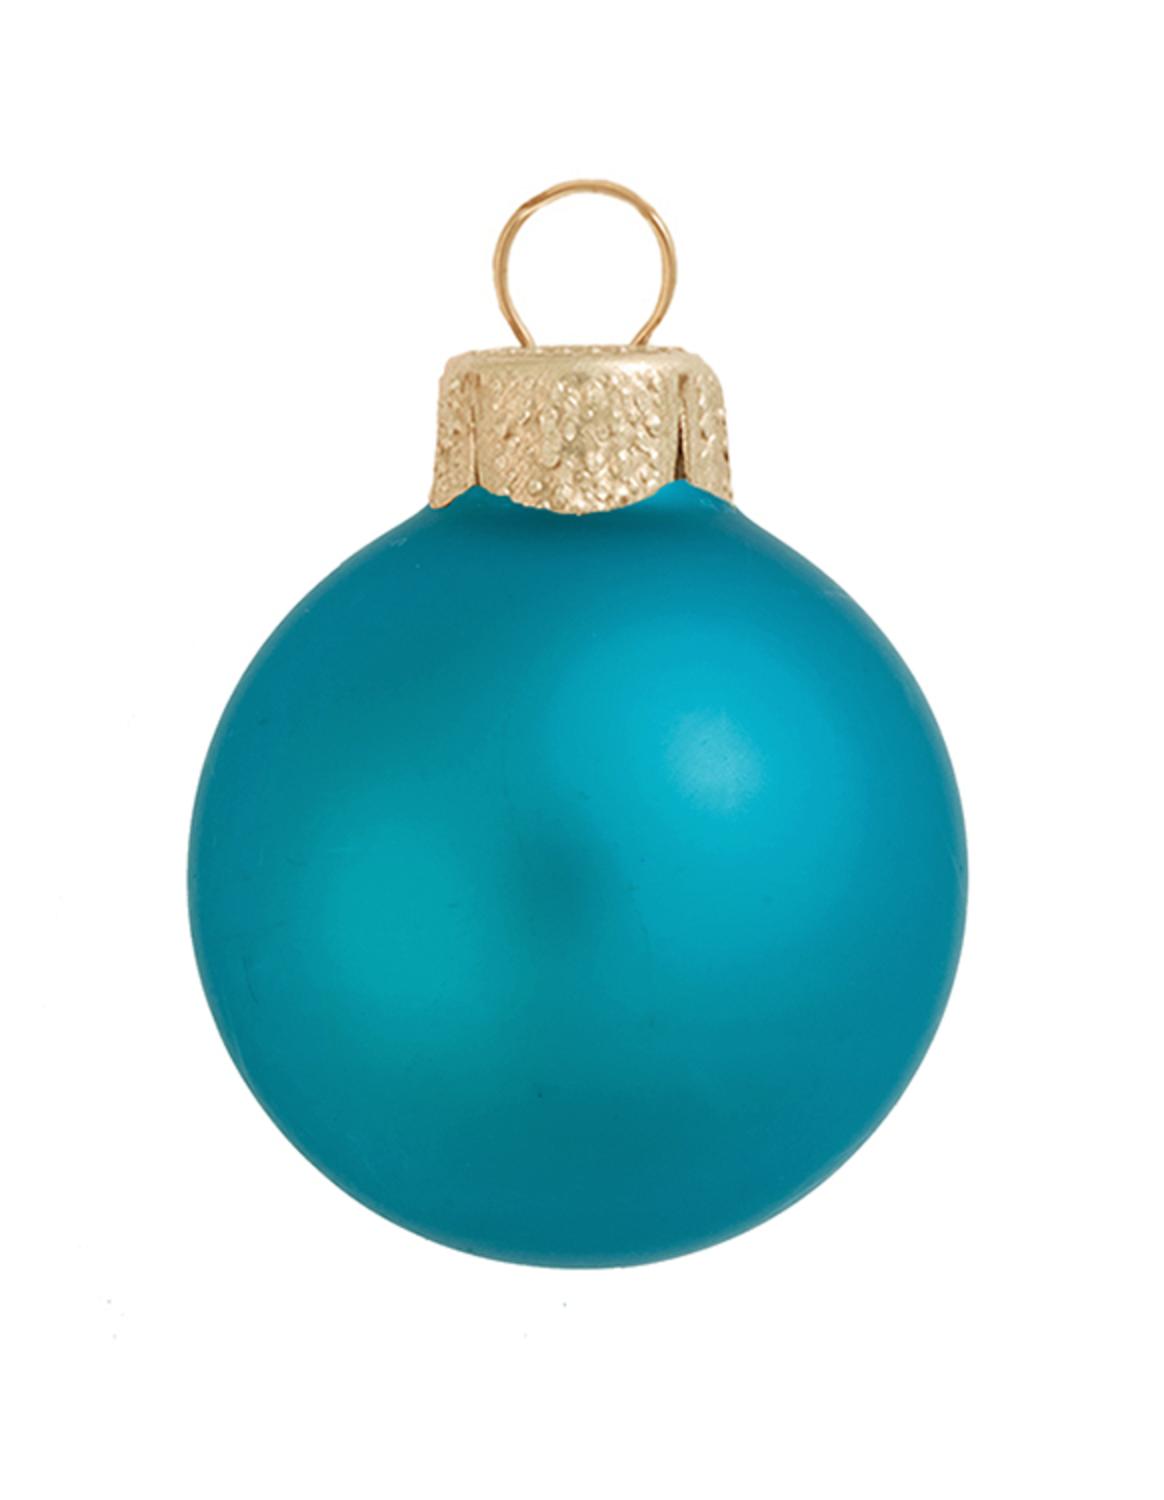 Whitehurst Turquoise Blue Matte Finish Glass Ball Christmas Ornament 7" (180mm)